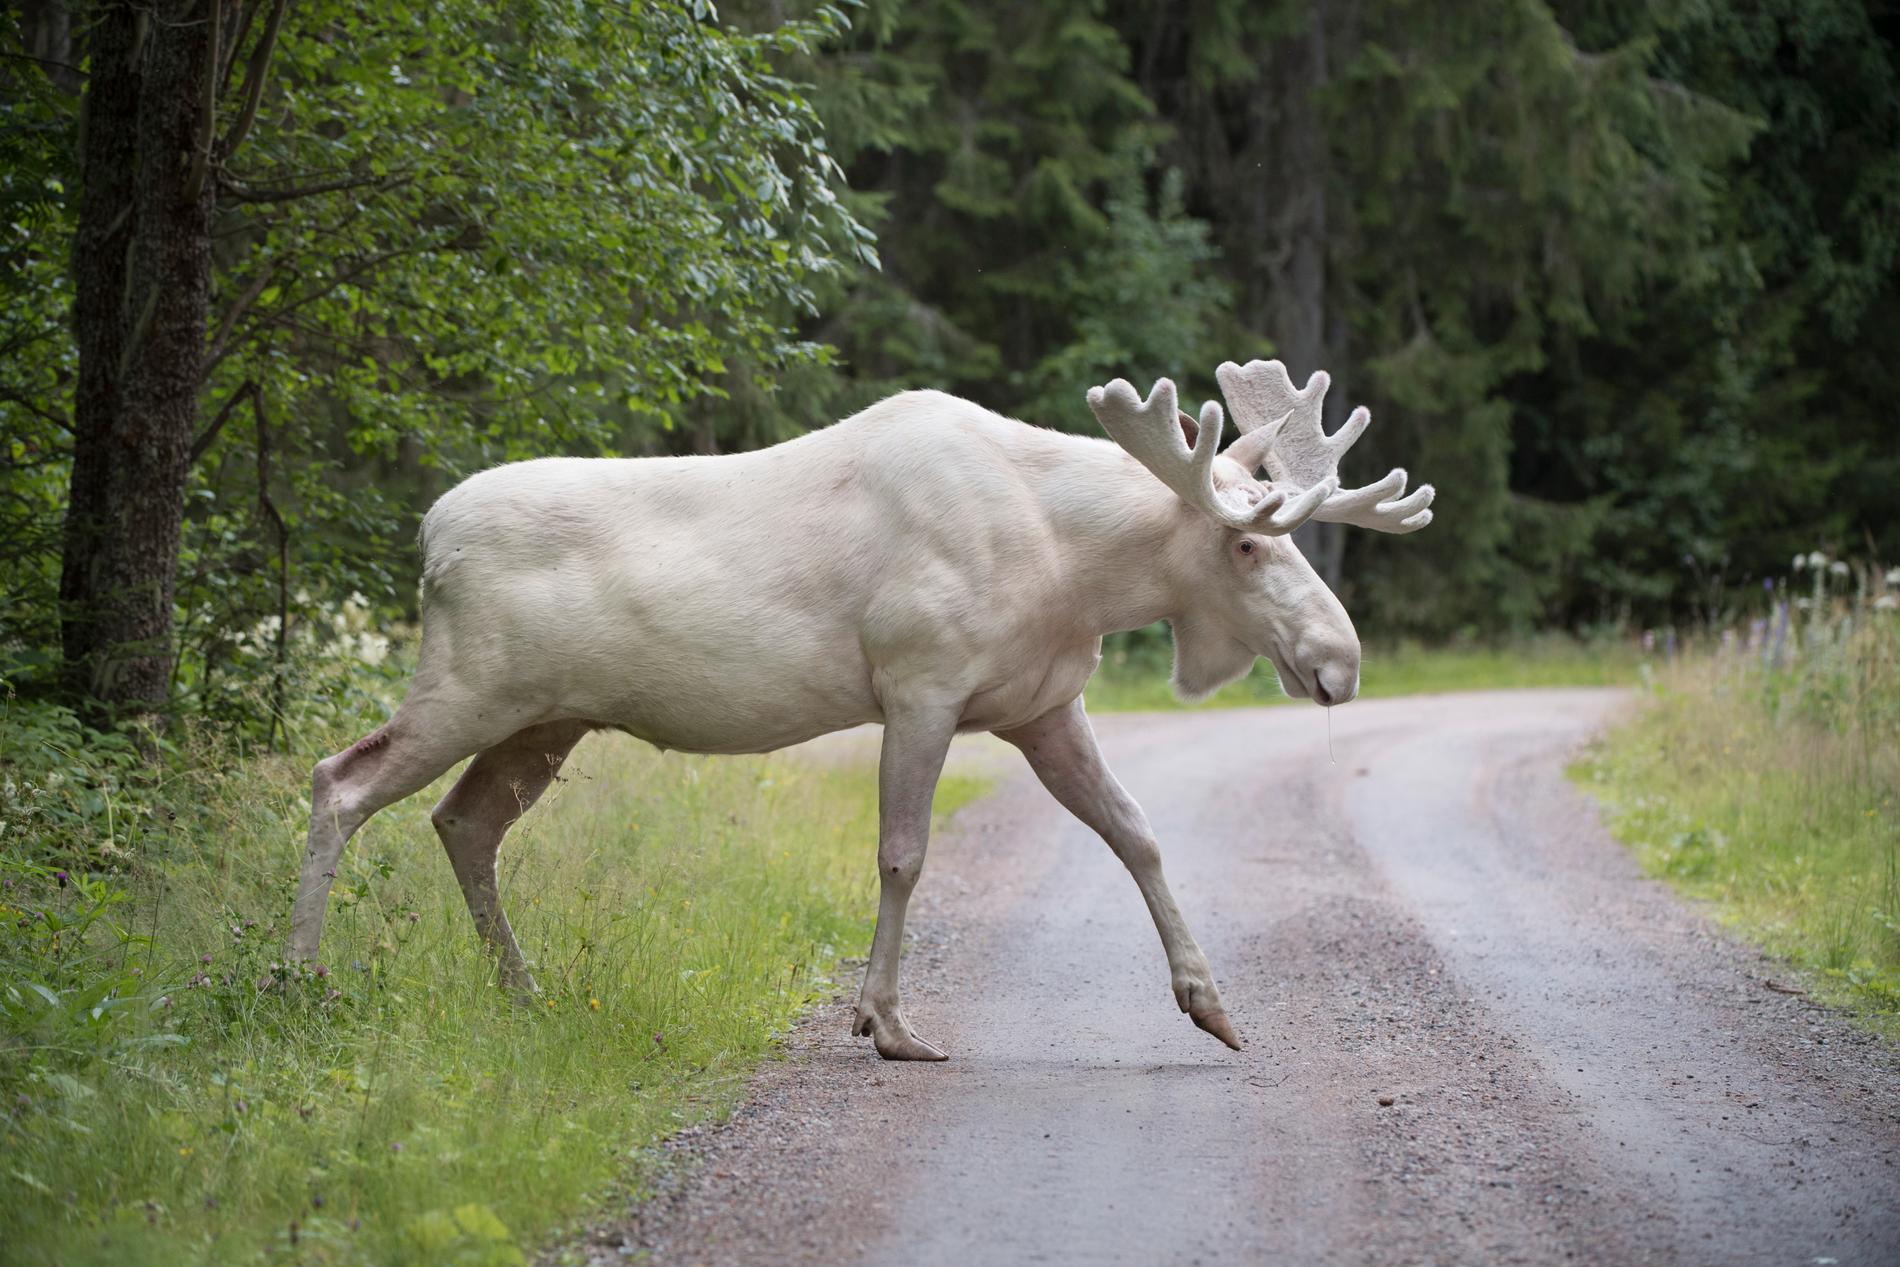 En vit älg i Gunnarskog i Värmland 2017. De ovanliga djuren skjuts sällan av jägare, och bedöms därför sakta bli fler i länet.